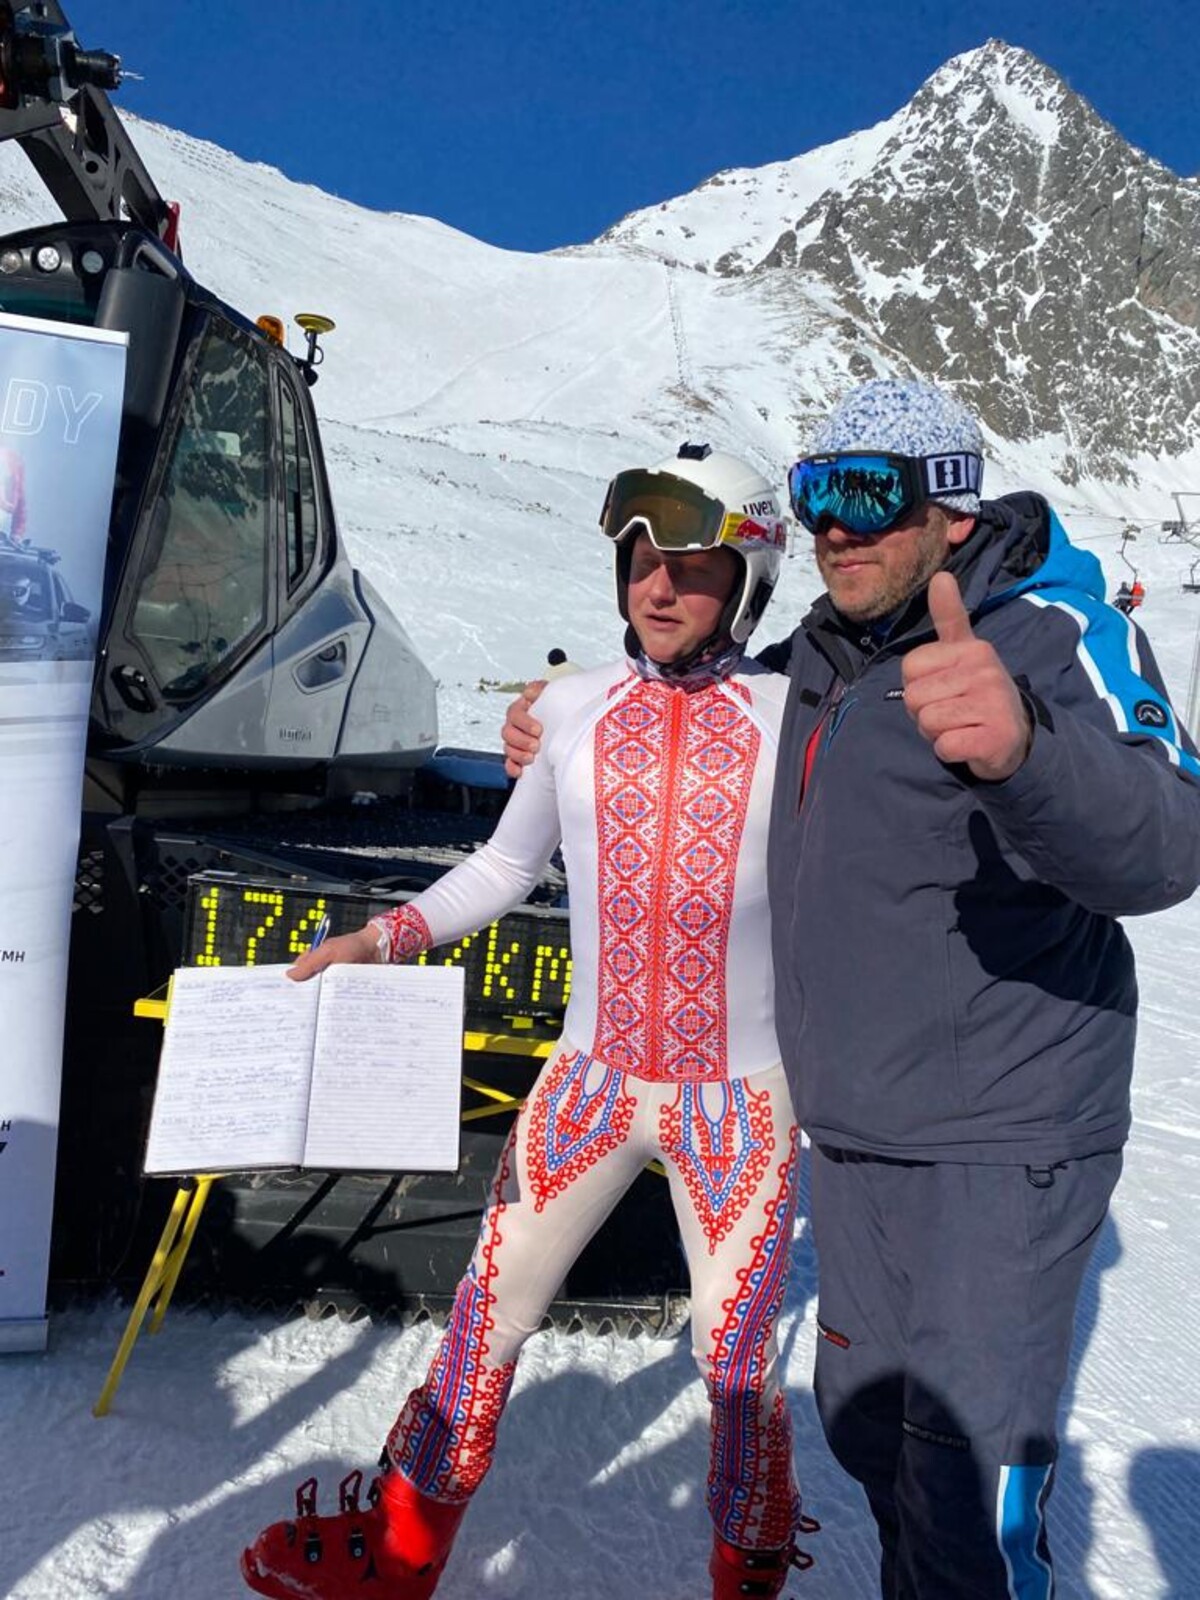 Richard Drzewiecky na fotke s držiteľom aktuálneho národného rýchlostného lyžiarskeho rekordu Michalom Bekešom. Rekord urobil práve na zjazdovke v Lomnickom sedle.